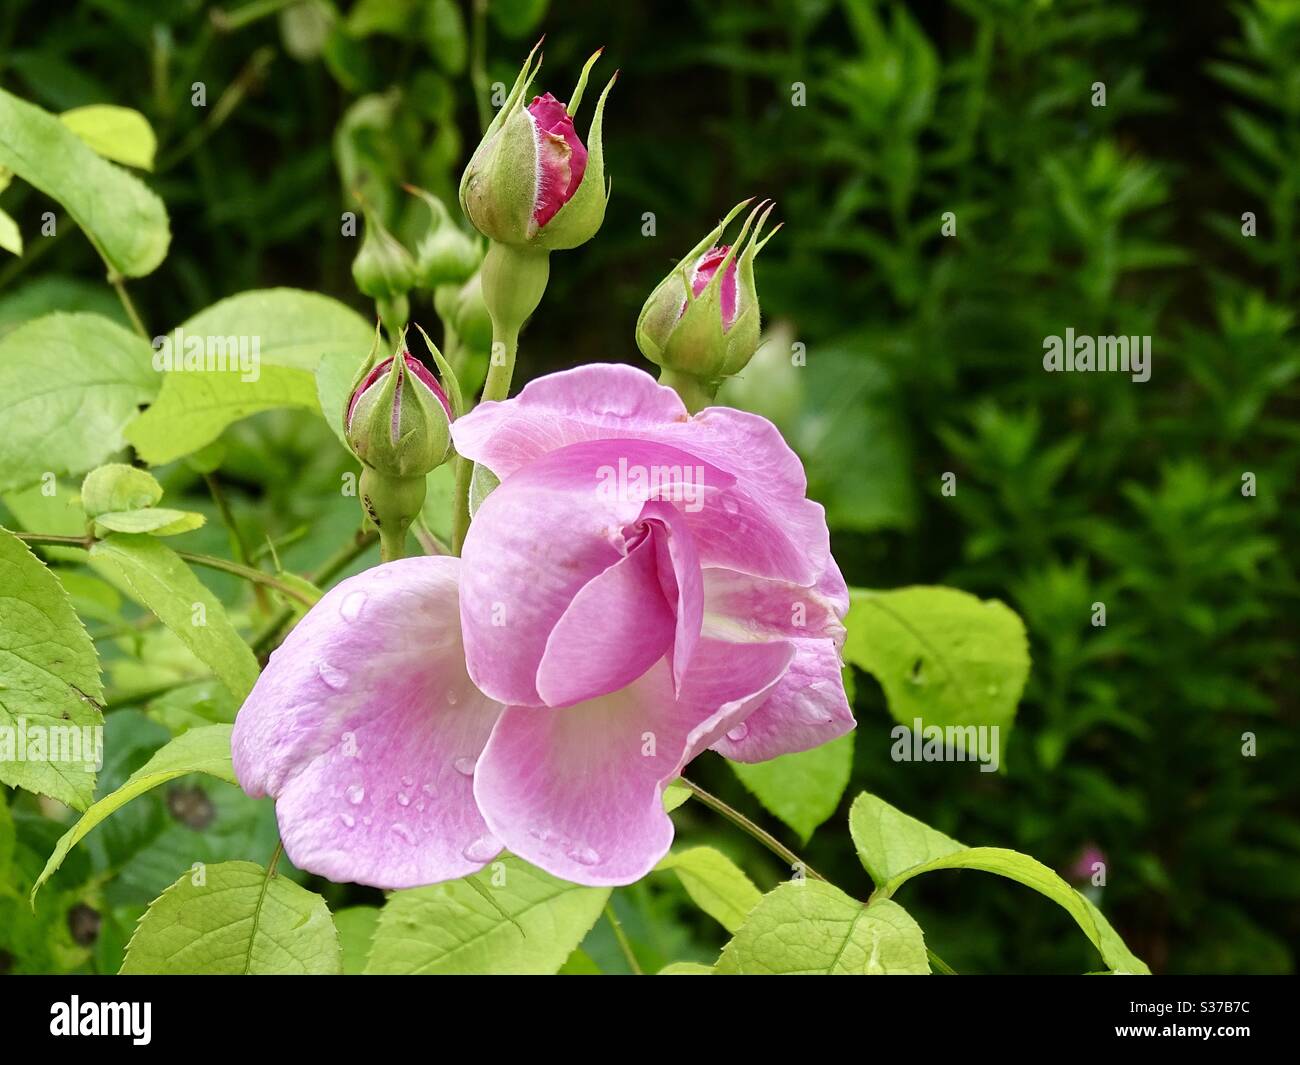 Immagini Stock - Boccioli Di Rosa Essiccati In Giardino In Una Giornata Di  Sole. Image 166066332